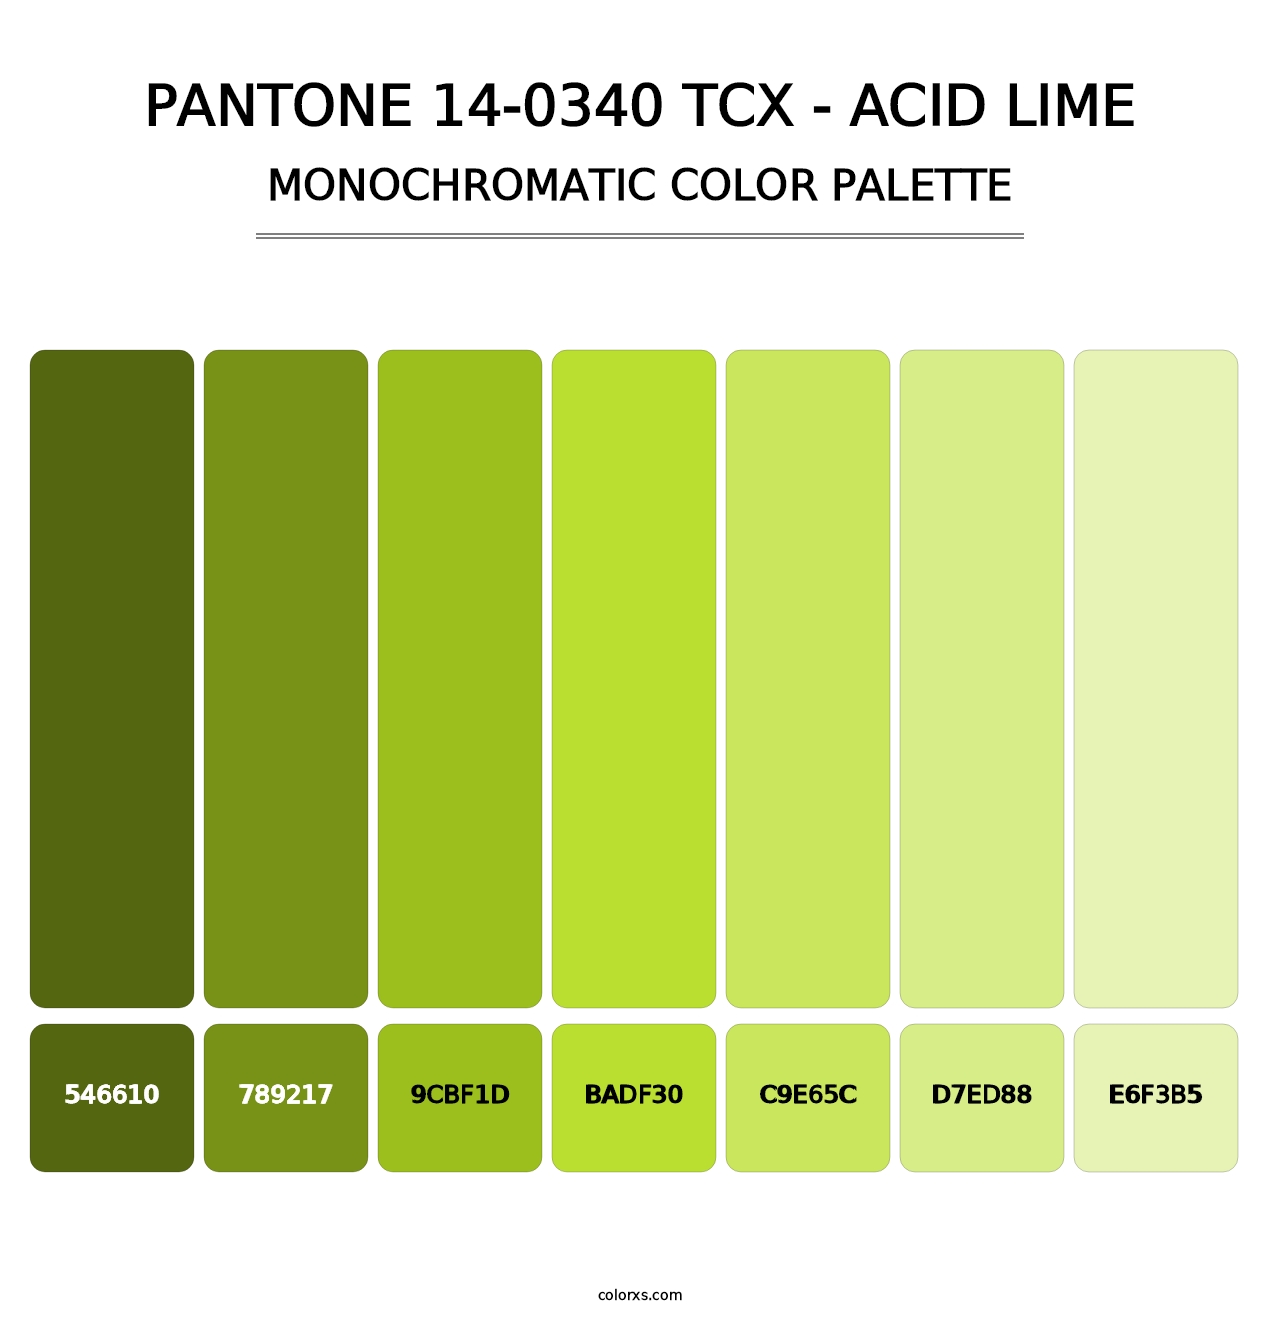 PANTONE 14-0340 TCX - Acid Lime - Monochromatic Color Palette